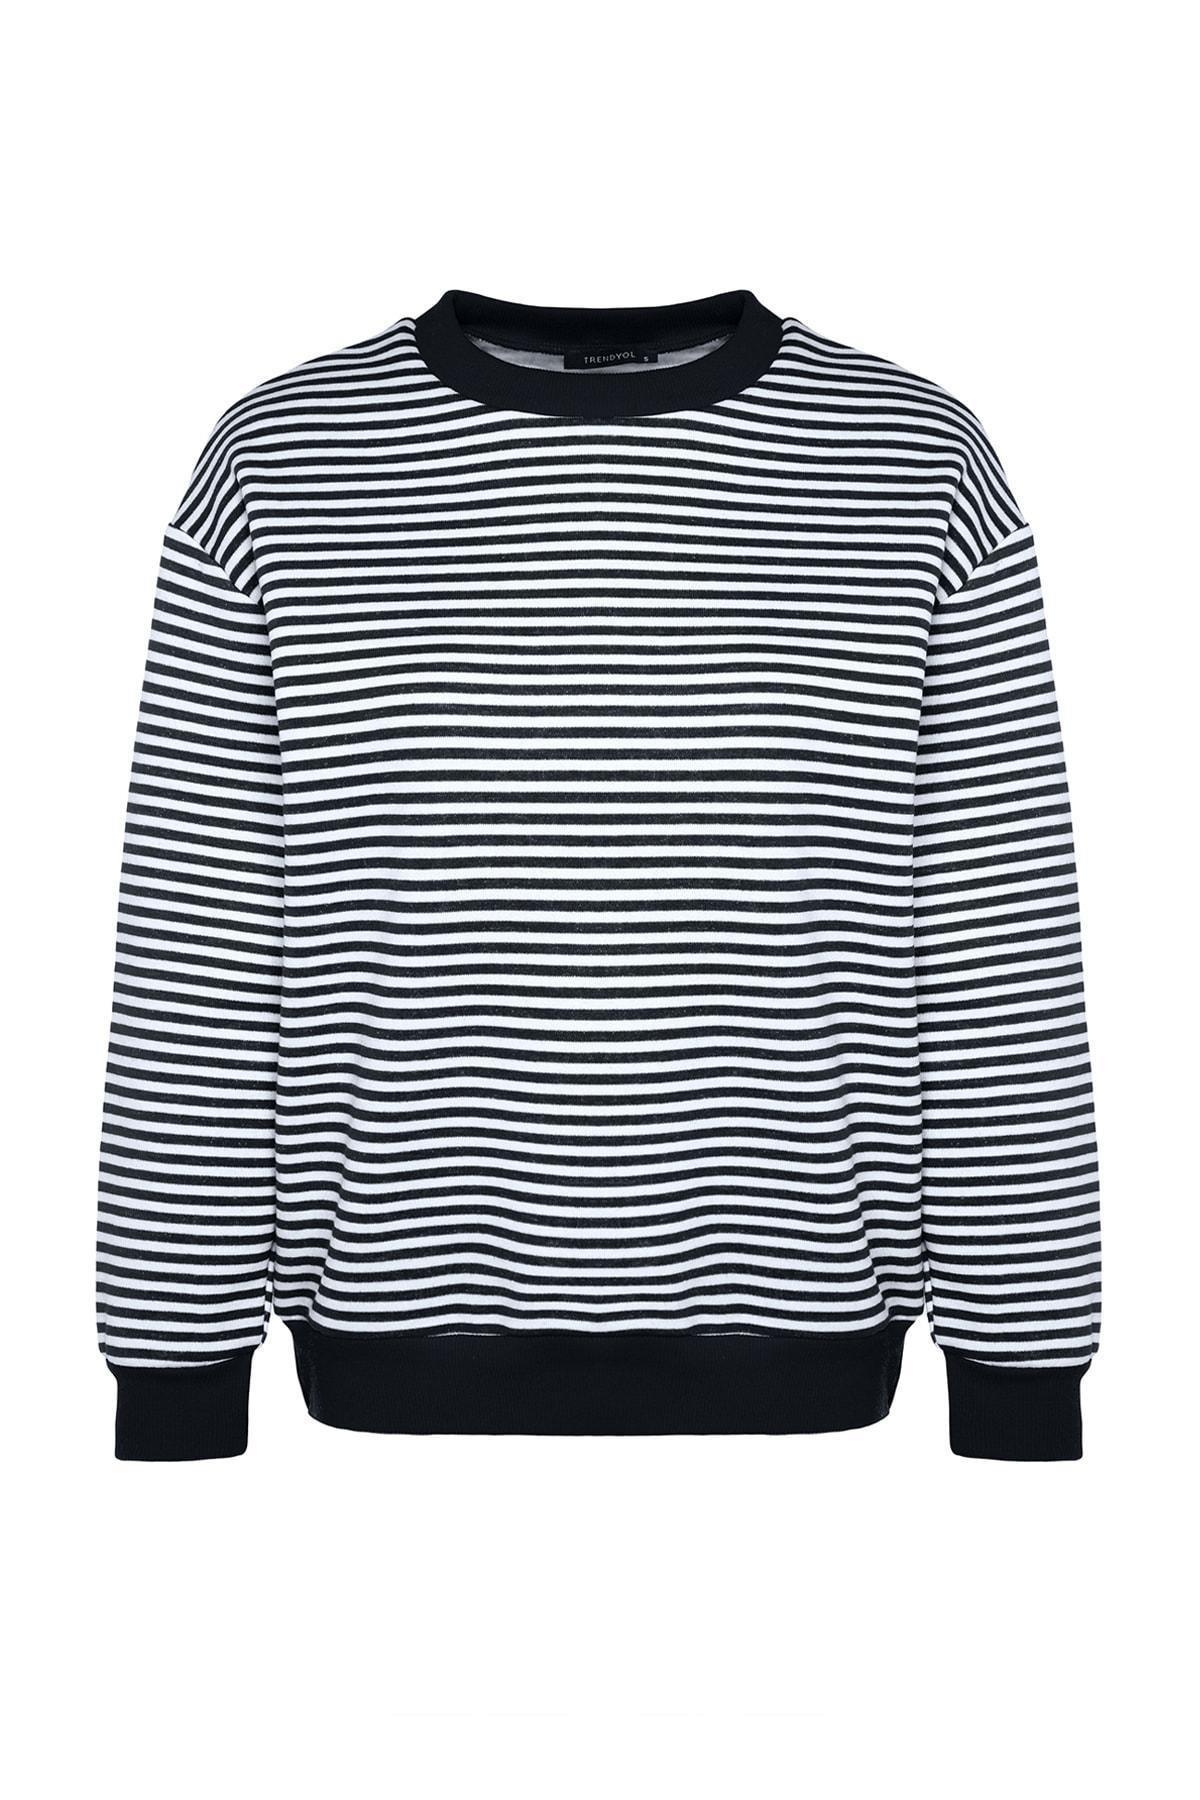 Trendyol - Navy Crew Neck Striped Knitted Sweatshirt